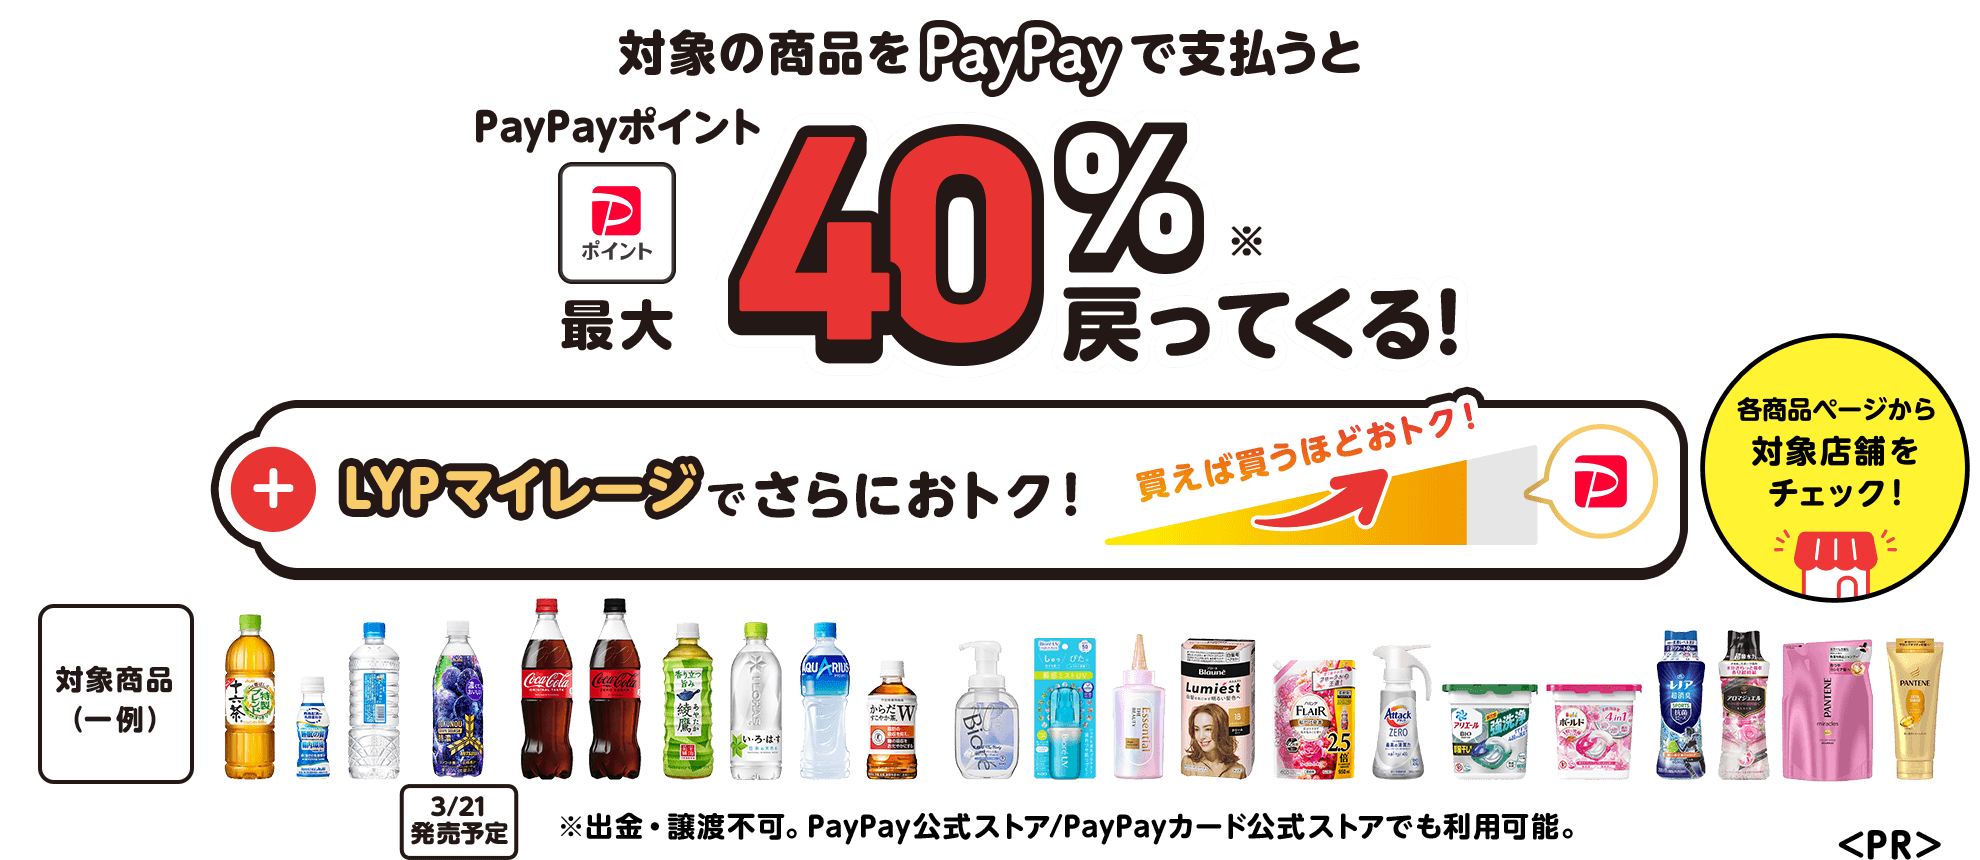 対象商品をPayPayで支払うとPayPayポイントが最大40%戻ってくる。またLYPマイレージでさらにおトク